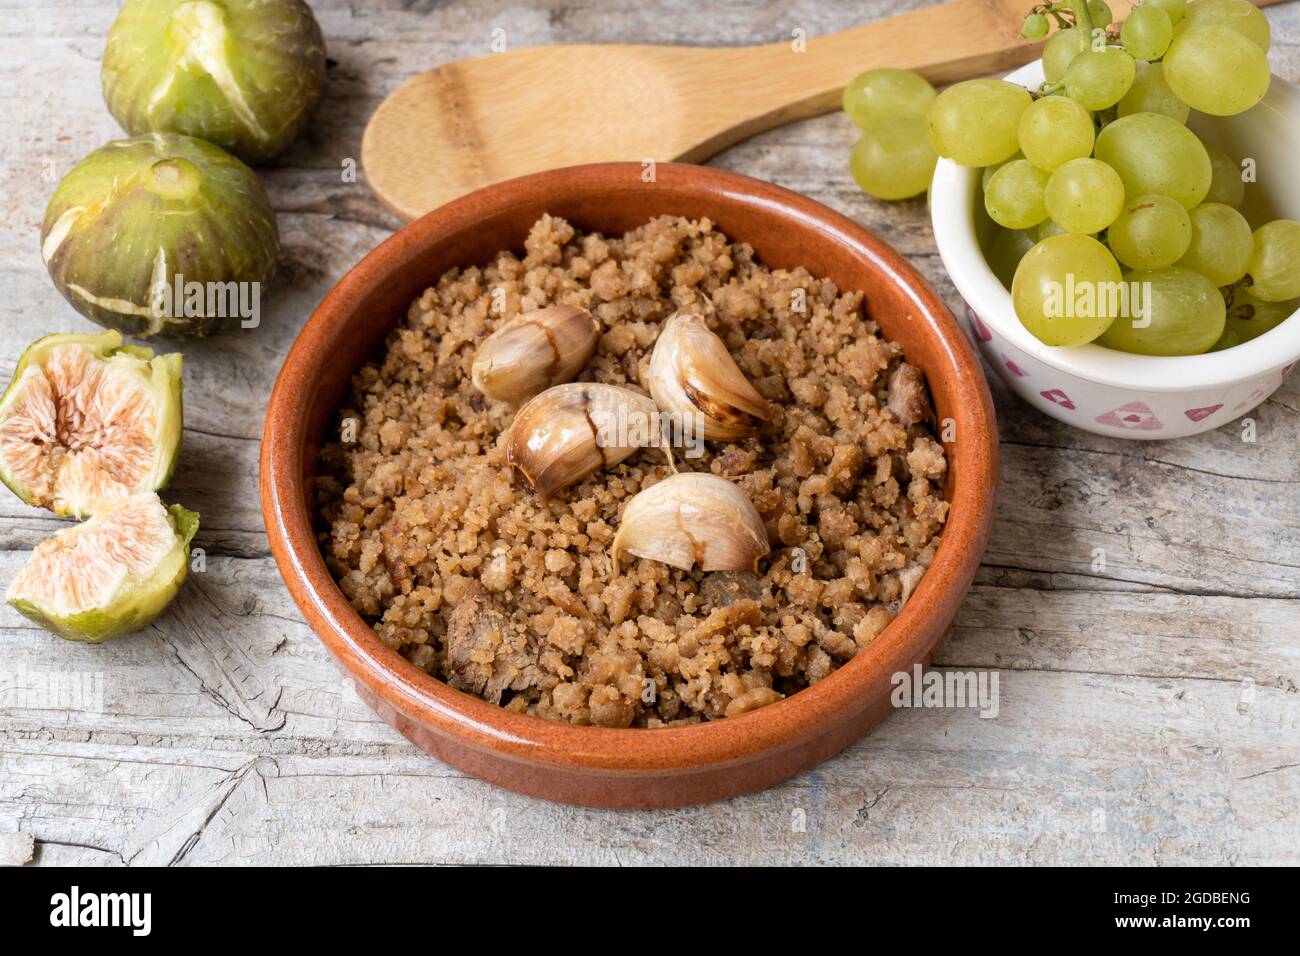 Primo piano di un tipico piatto spagnolo chiamato Migas, accompagnato da uve e fichi, su un rustico fondo ligneo. Foto Stock